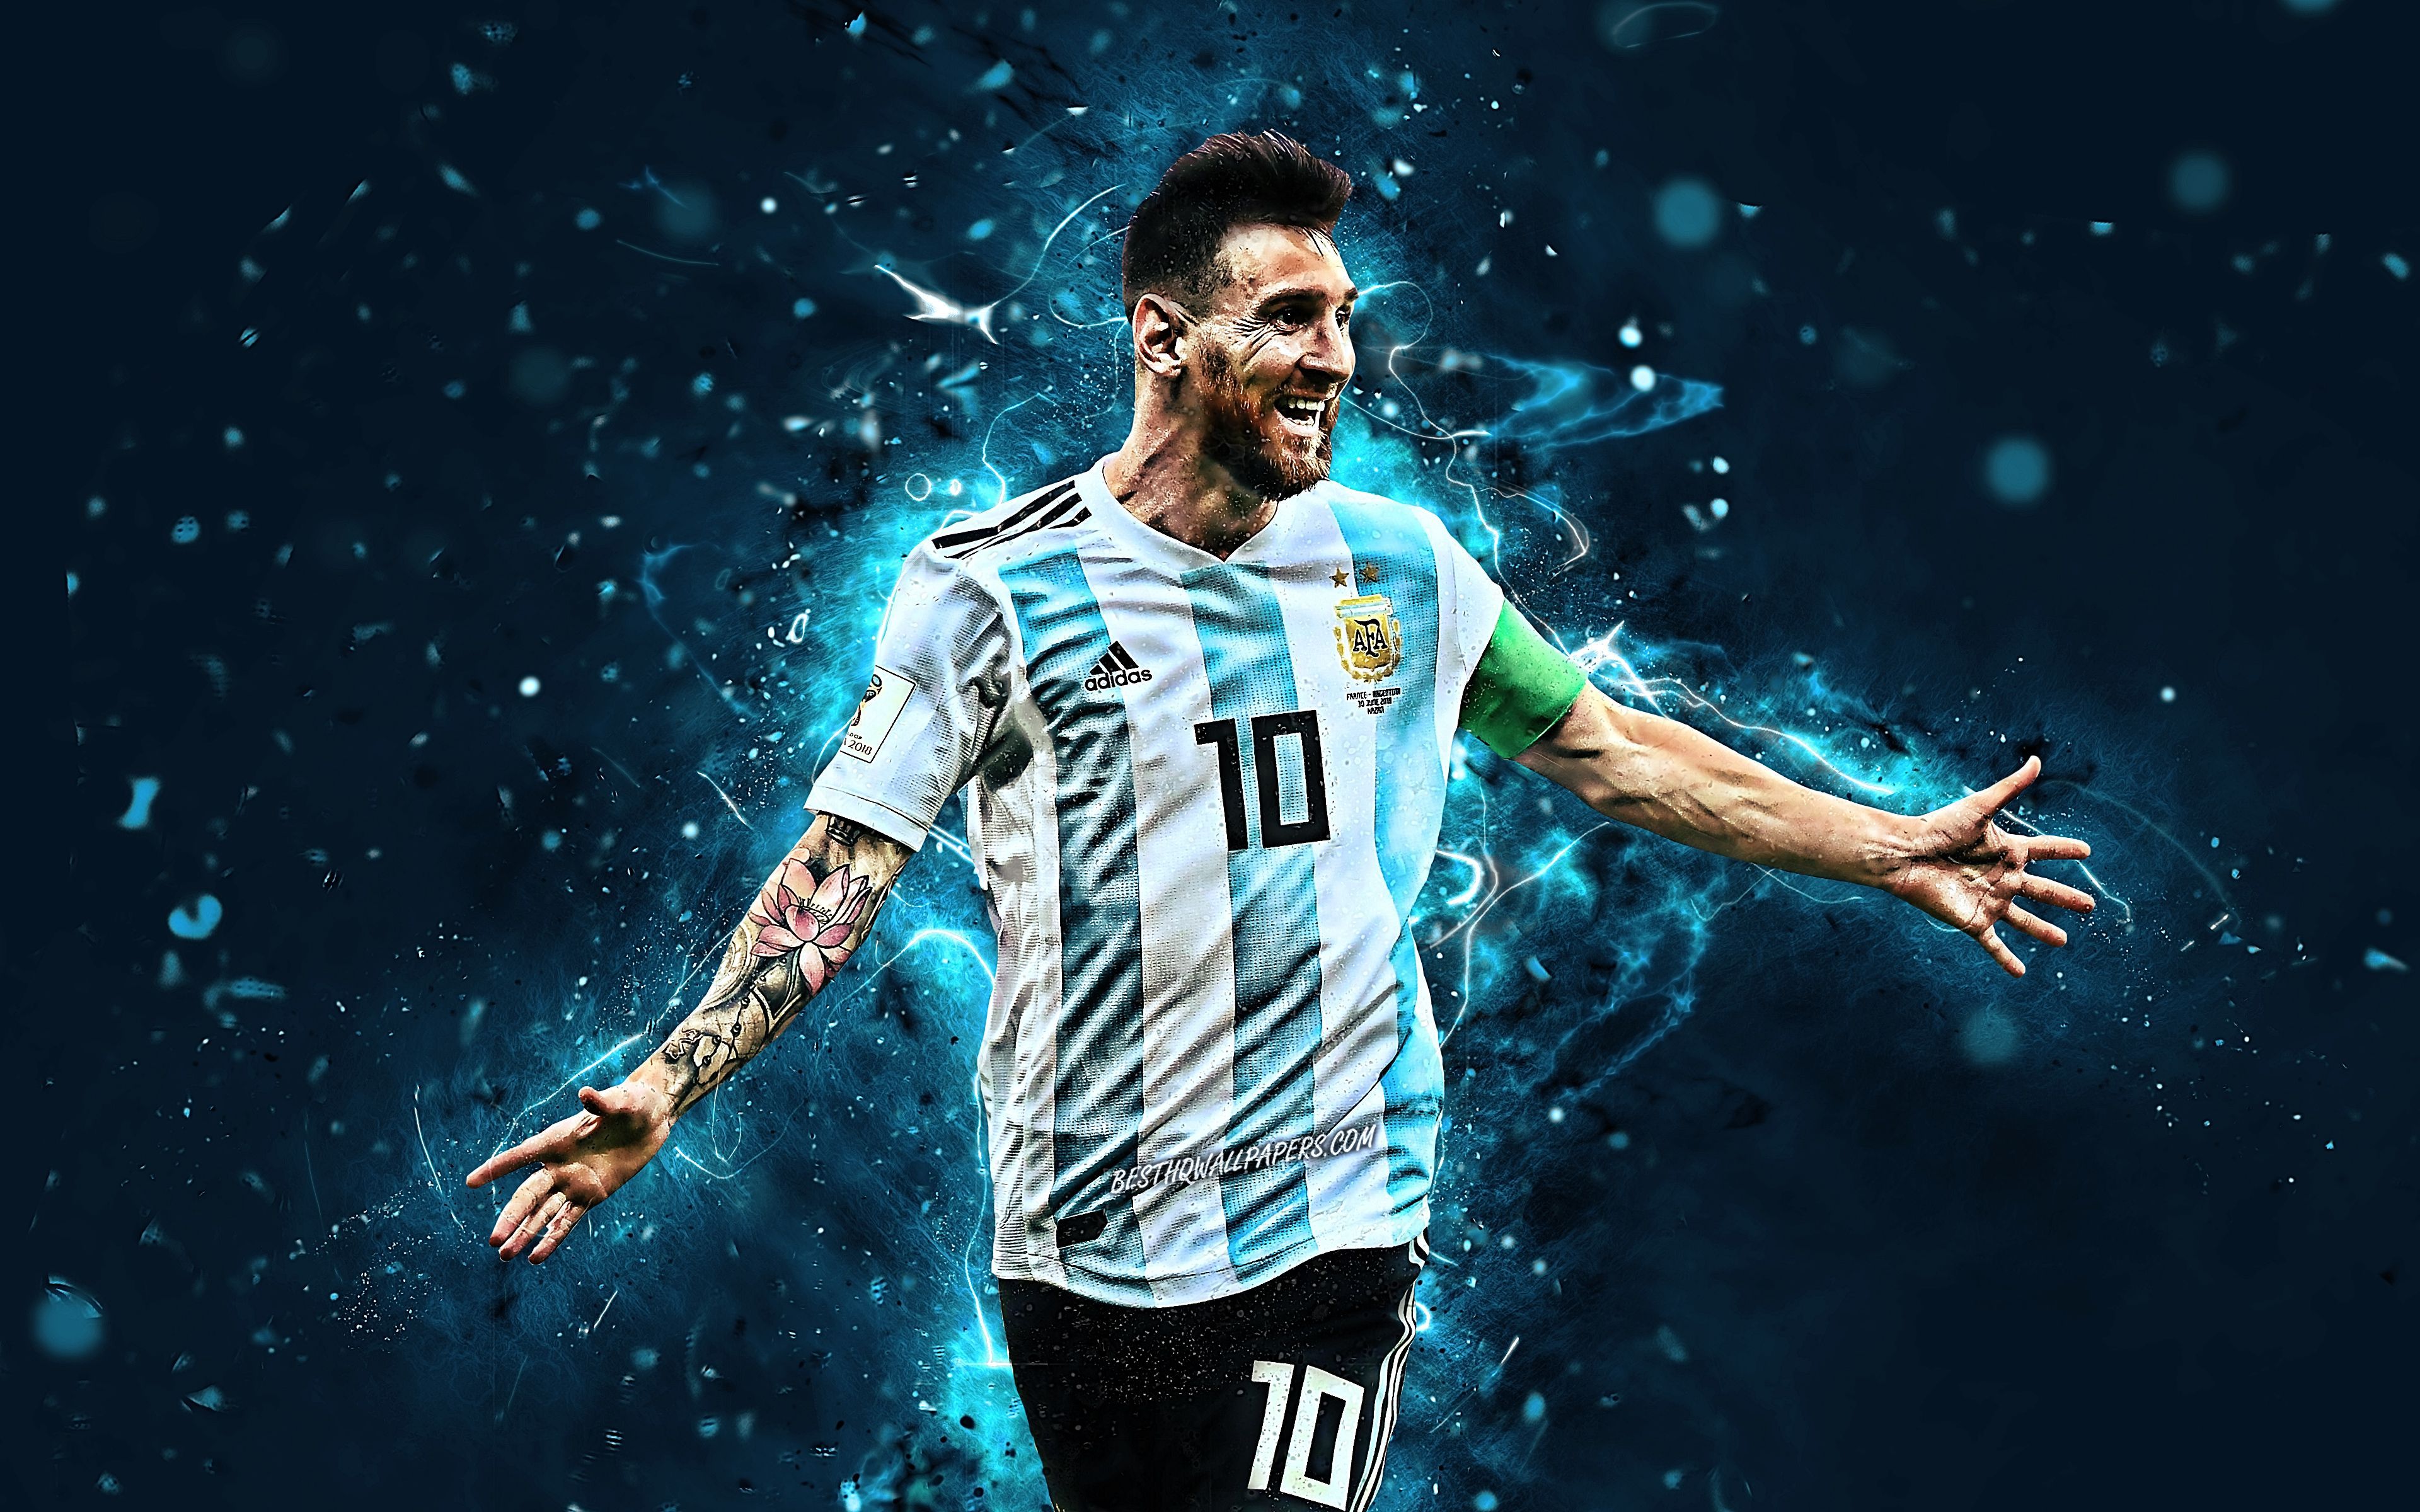 Hãy để những hình nền Lionel Messi 2022 Argentina giúp bạn tạo nên một cuộc phiêu lưu và truyền cảm hứng mới. Những hình nền được thiết kế đầy ấn tượng và chất lượng cao sẽ giúp bạn thực sự tận hưởng niềm đam mê bóng đá của mình.